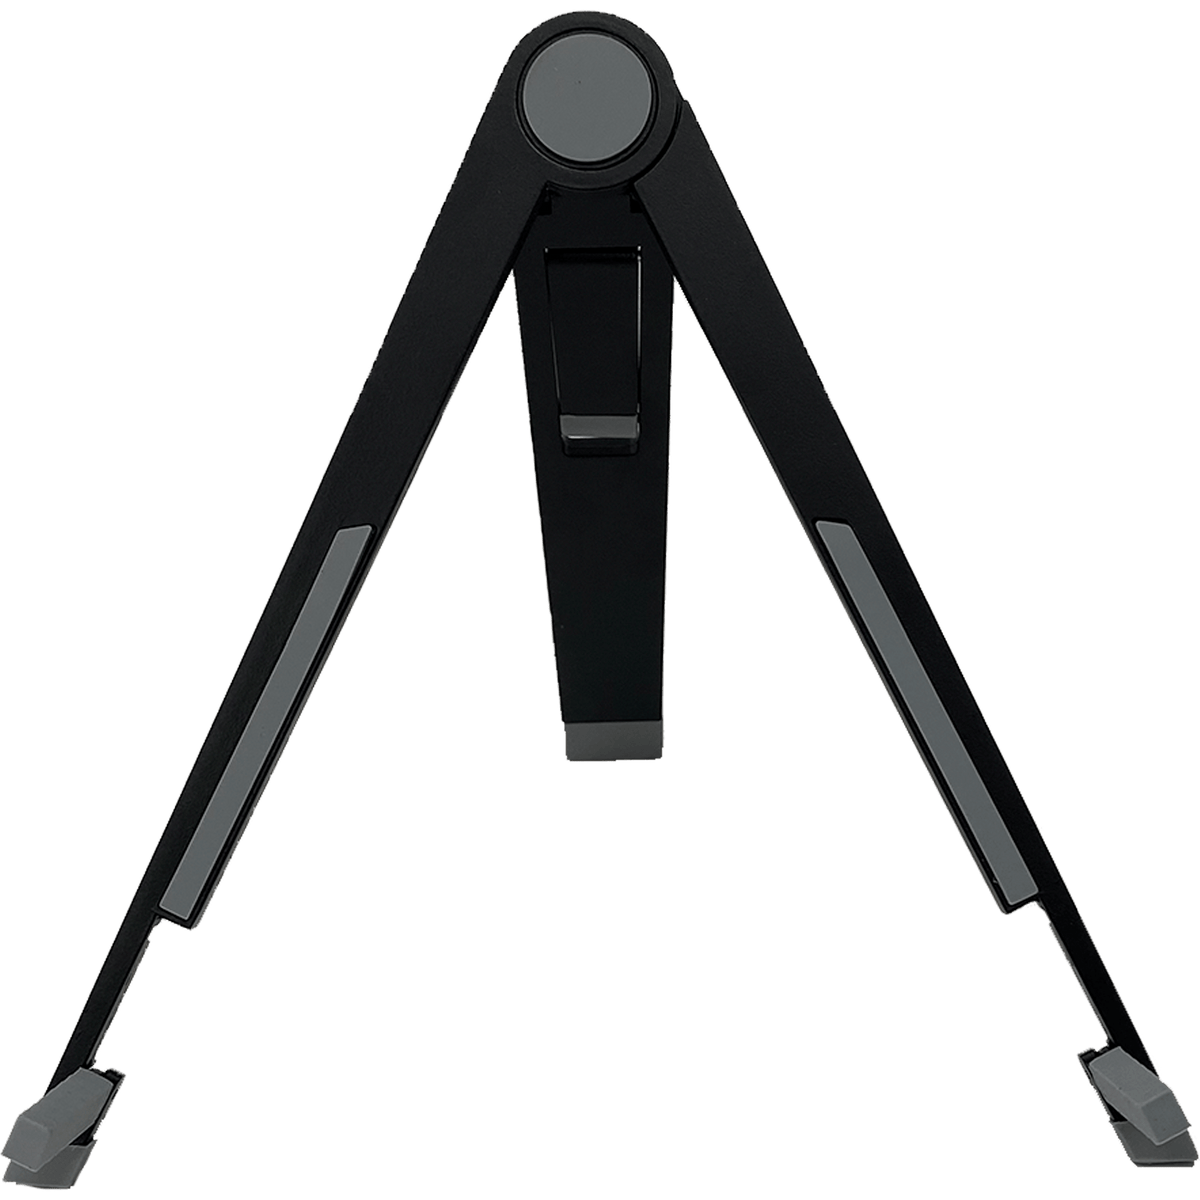 Longshot Tablet Stand (Black) – Target Camera System - Longshot Target Cameras